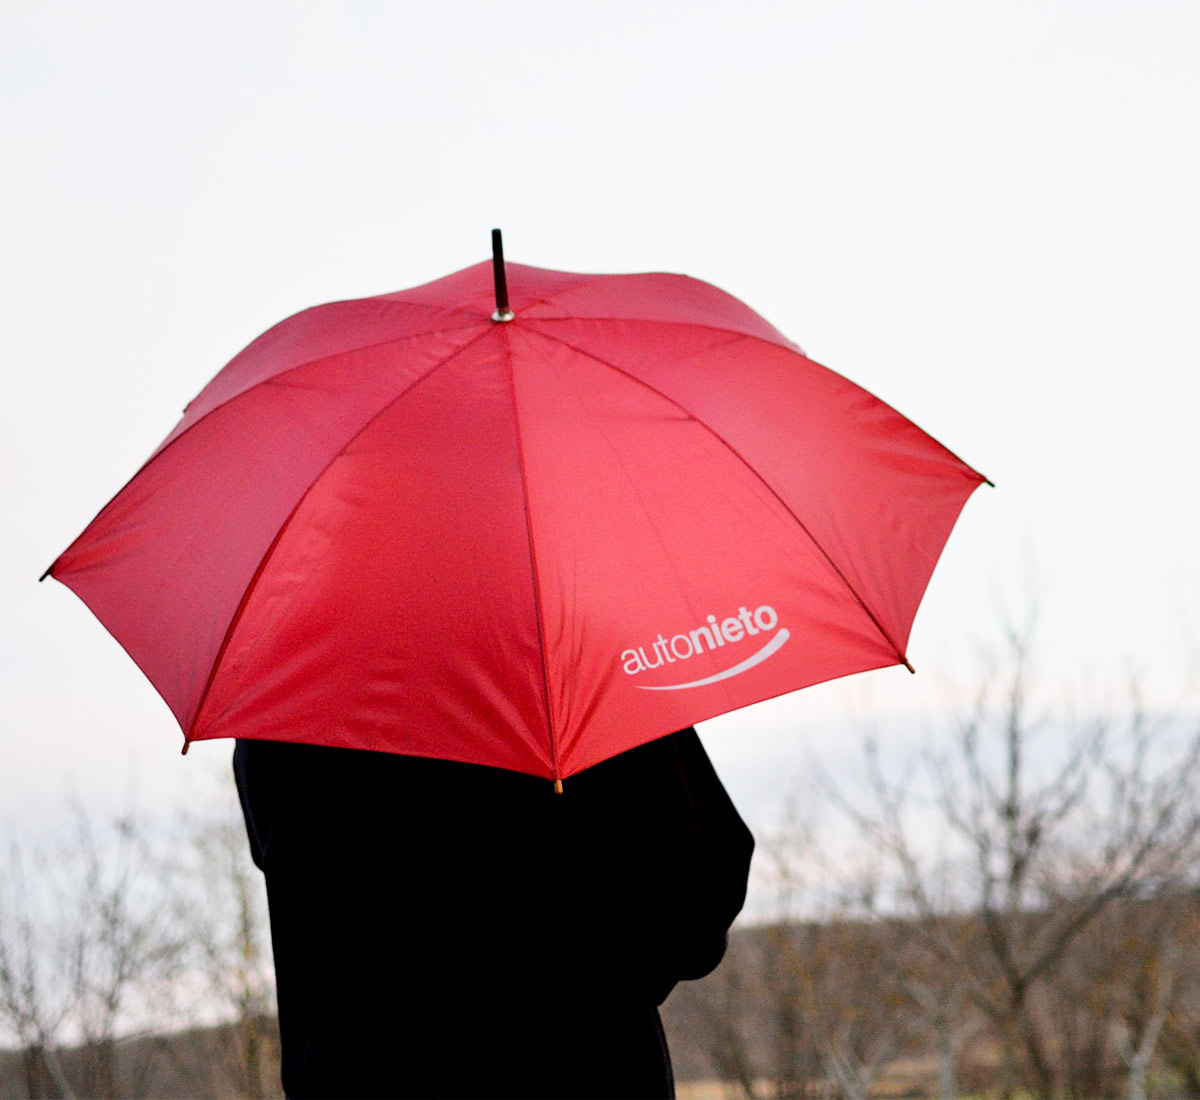 Paraguas publicitario personalizado en color rojo para Grupo Autonieto. Merchandising de Otoño/Invierno